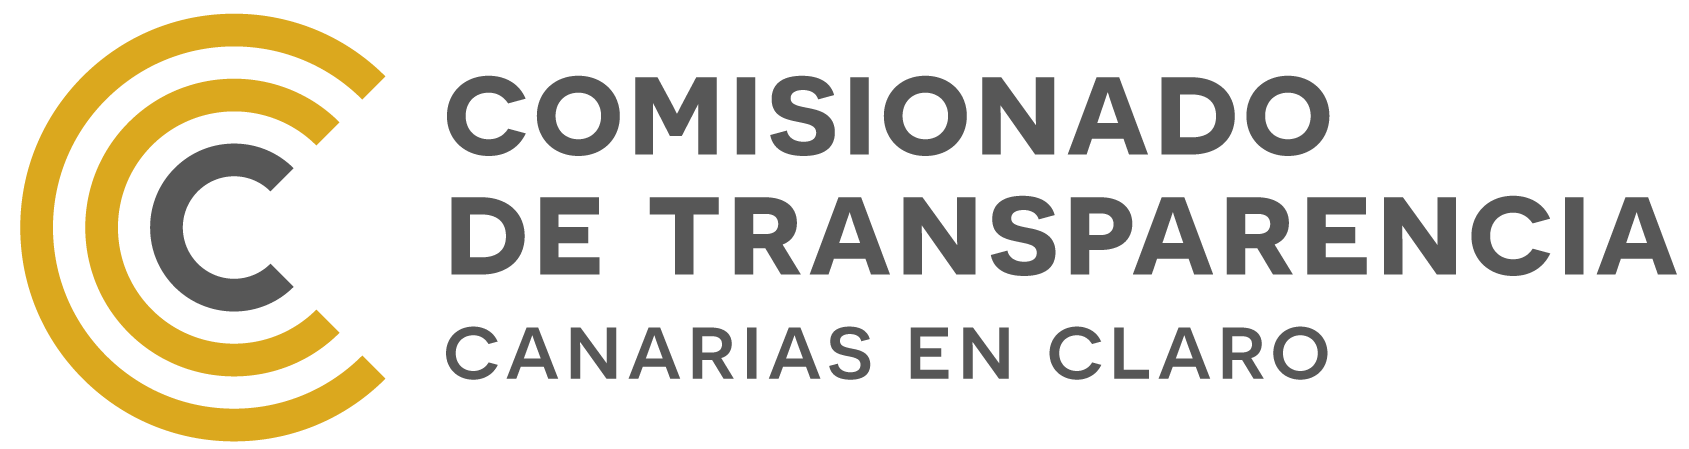 Logo Comisionado